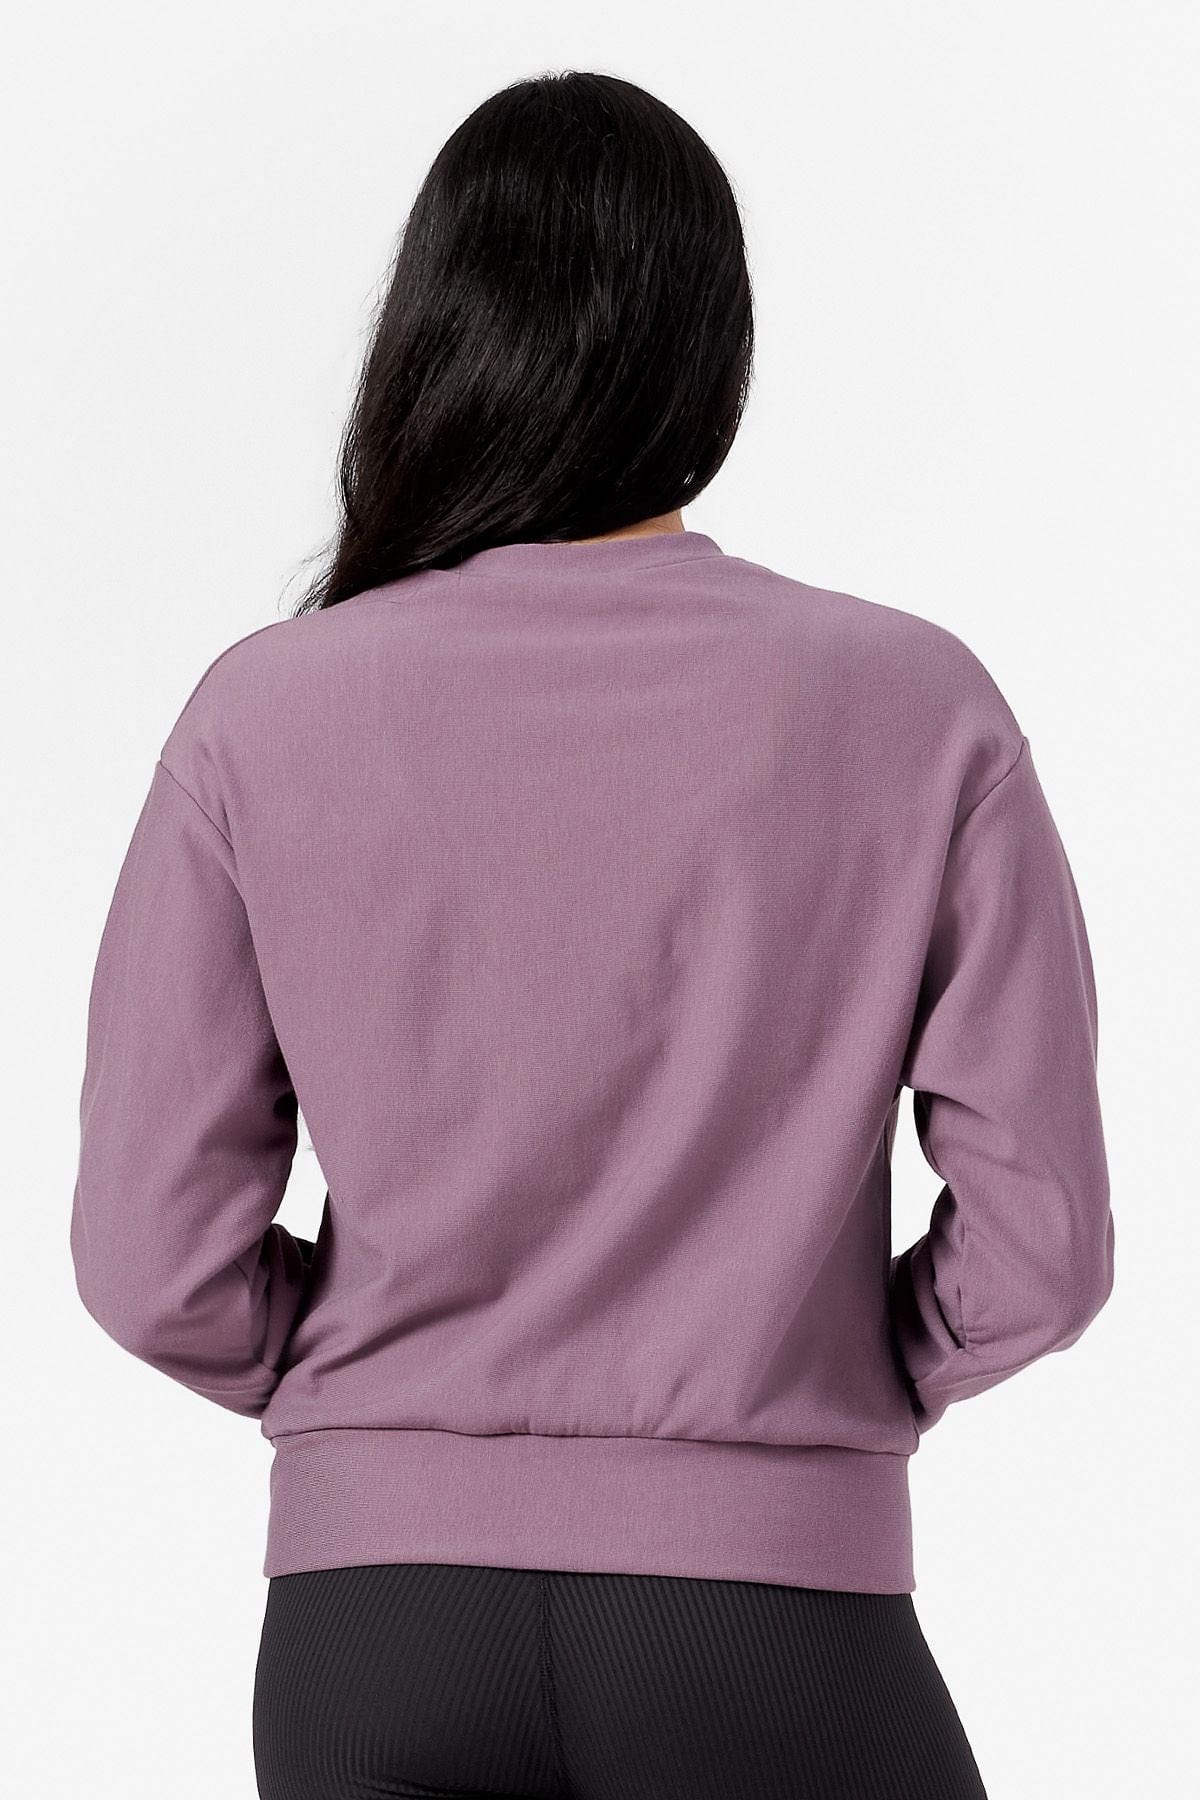 Back of a woman wearing a purple crew neck sweatshirt